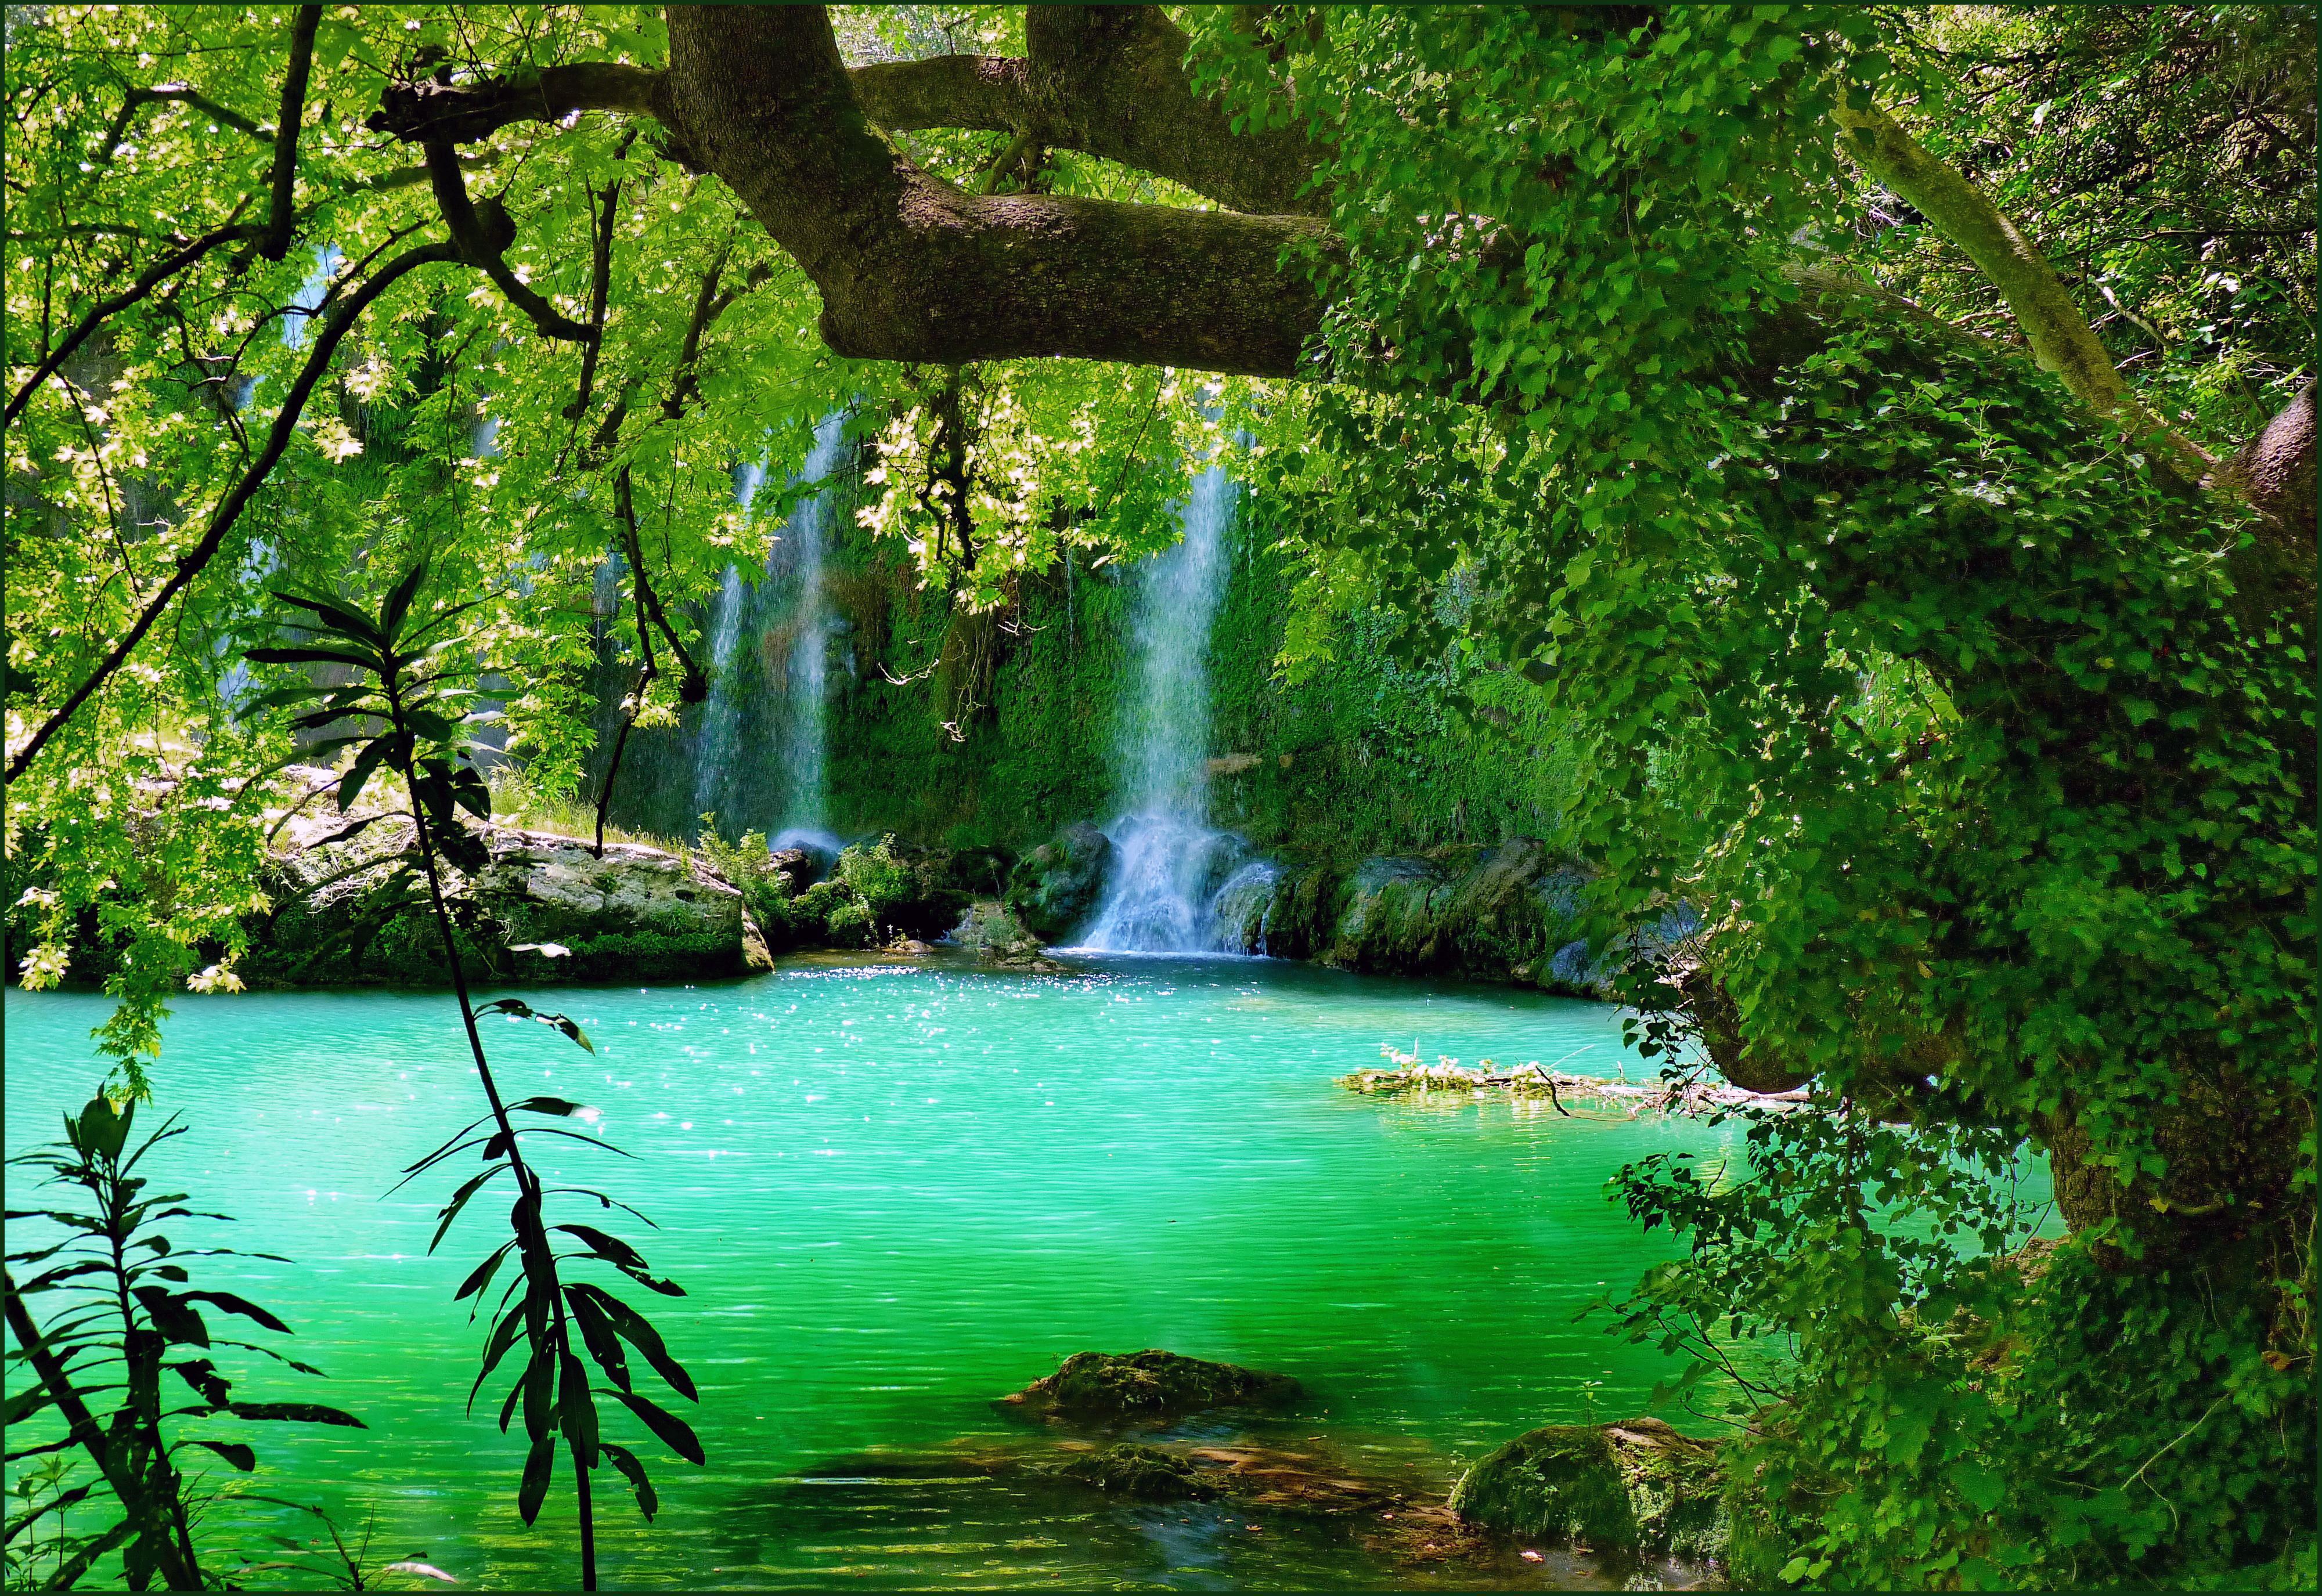 Screensaver Kursunlu, Kursunlu waterfall, Turkey, pond, trees